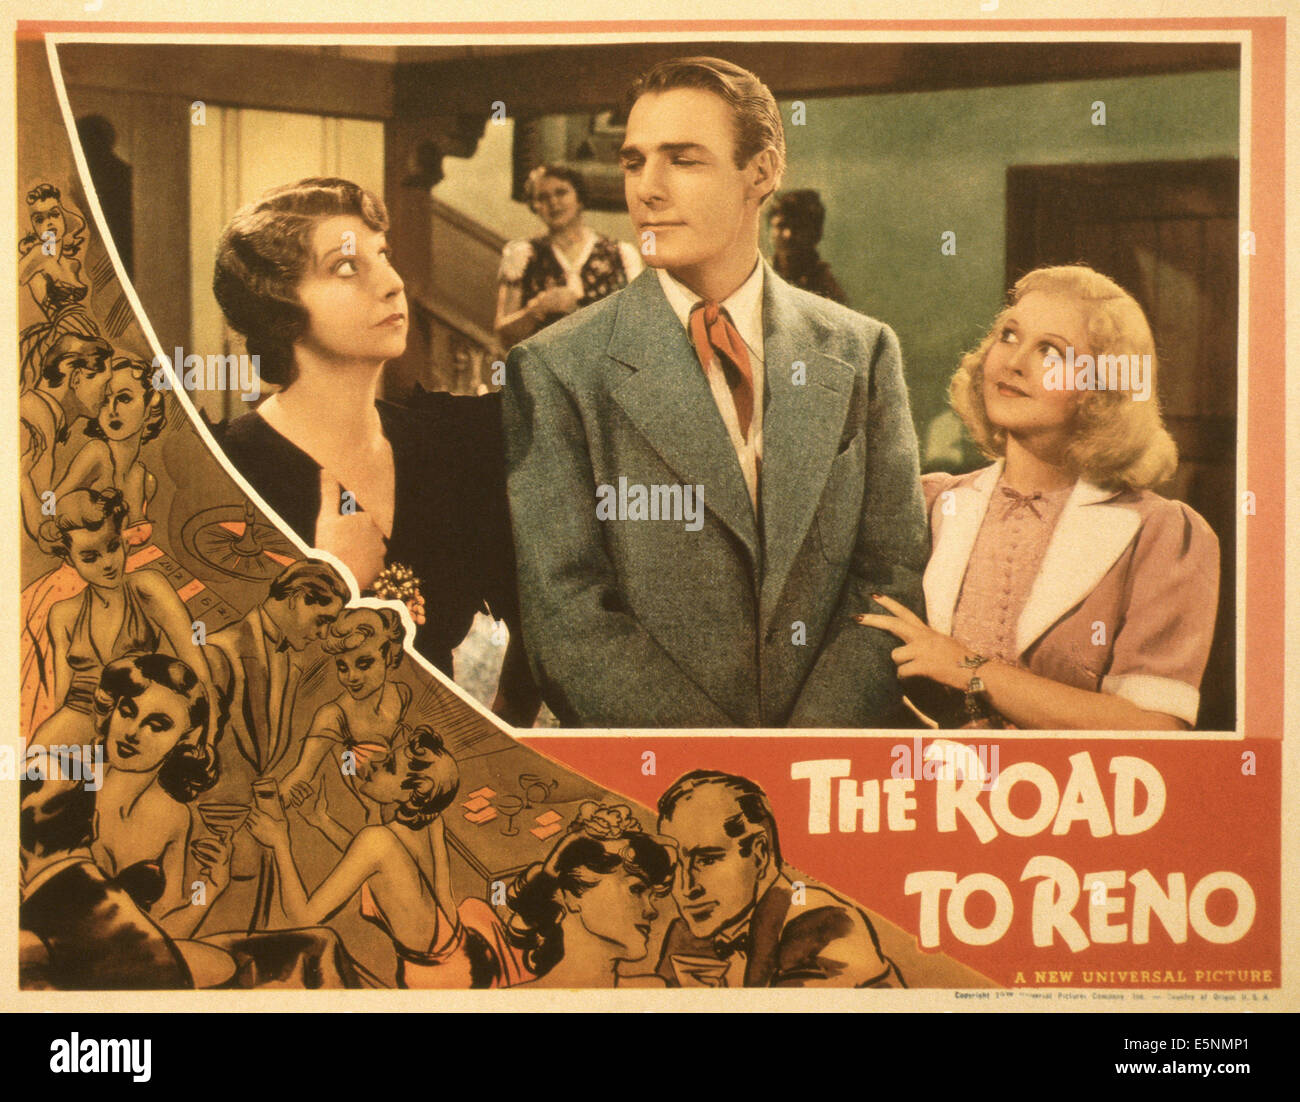 THE ROAD TO RENO, US lobbycard, from left: Helen Broderick, Randolph Scott, Hope Hampton, 1938 Stock Photo